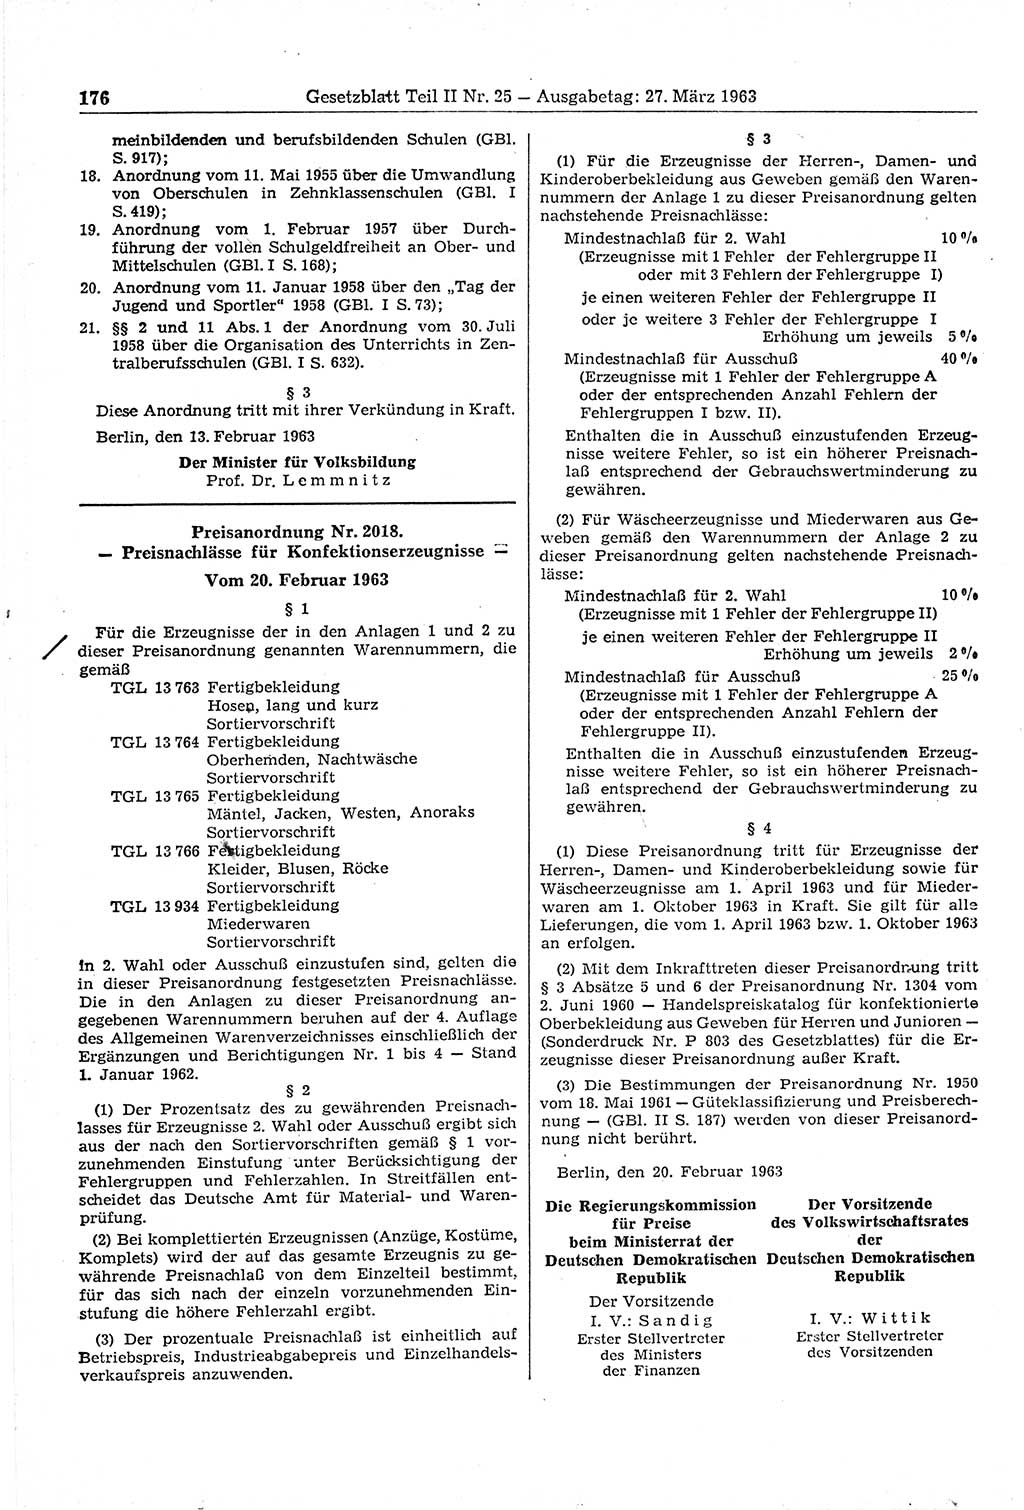 Gesetzblatt (GBl.) der Deutschen Demokratischen Republik (DDR) Teil ⅠⅠ 1963, Seite 176 (GBl. DDR ⅠⅠ 1963, S. 176)